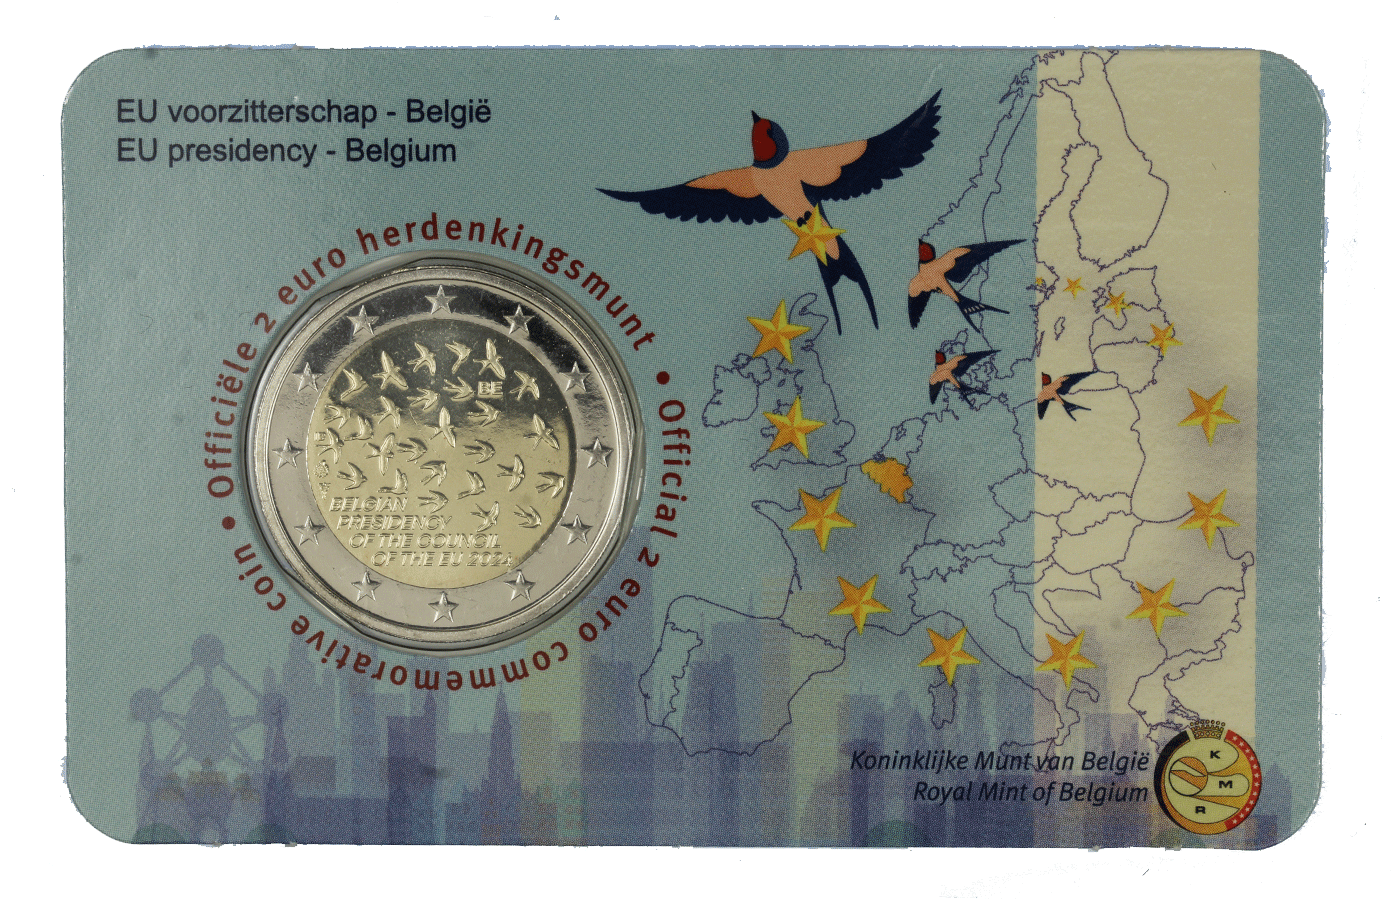 "Turno di Presidenza del Consiglio dell'Unione europea tenuto dal Belgio" - 2 Euro - In coincard fiamminga